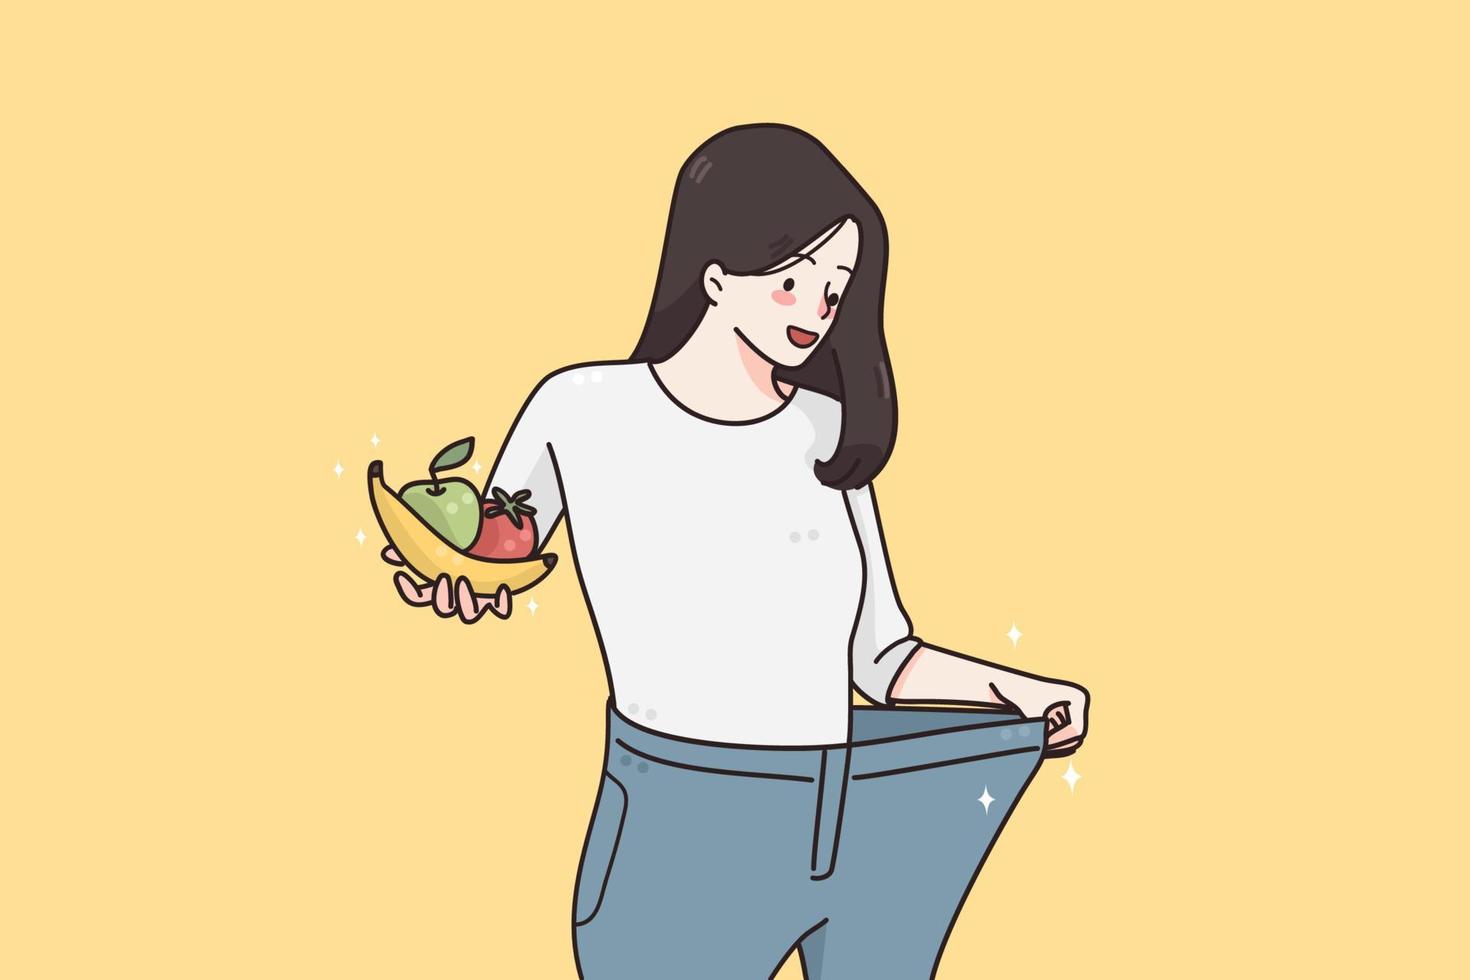 perte de poids et concept de régime. femme souriante heureuse en jeans surdimensionnés debout tenant des fruits et légumes frais montrant des résultats de perte de poids illustration vectorielle vecteur